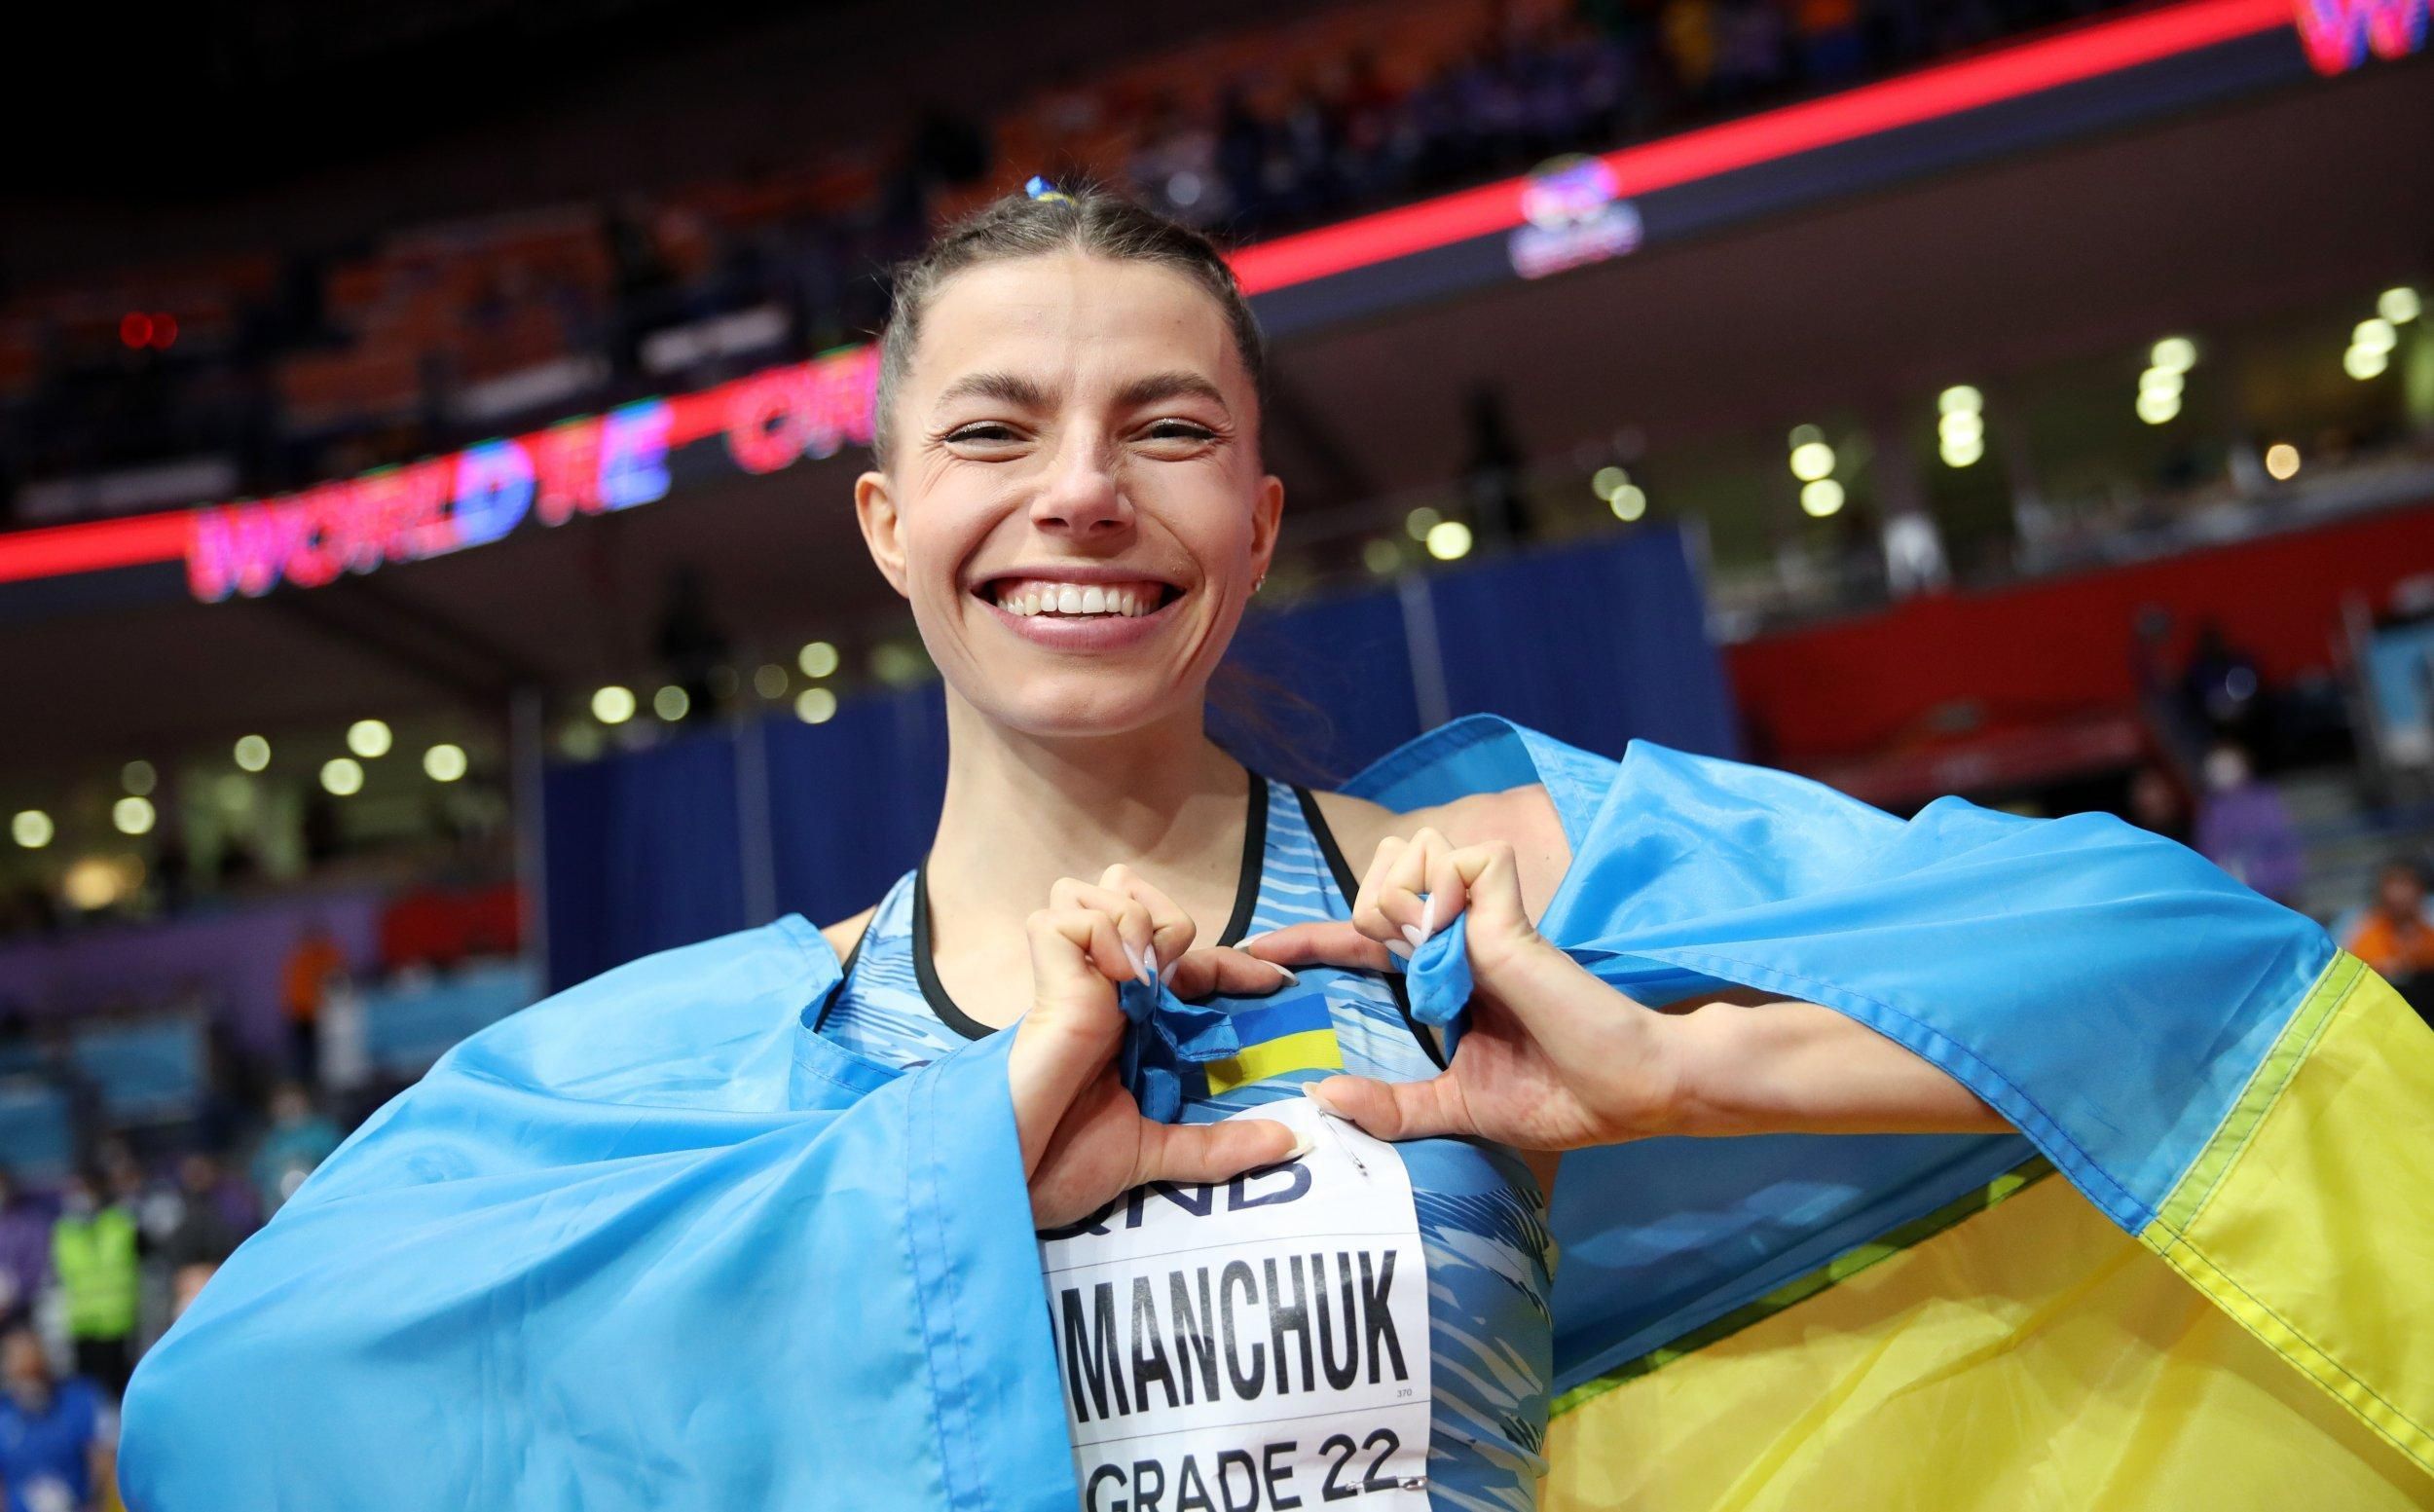 Бех-Романчук в волевом стиле победила олимпийскую чемпионку на Бриллиантовой лиге в Риме - 24 канал Спорт